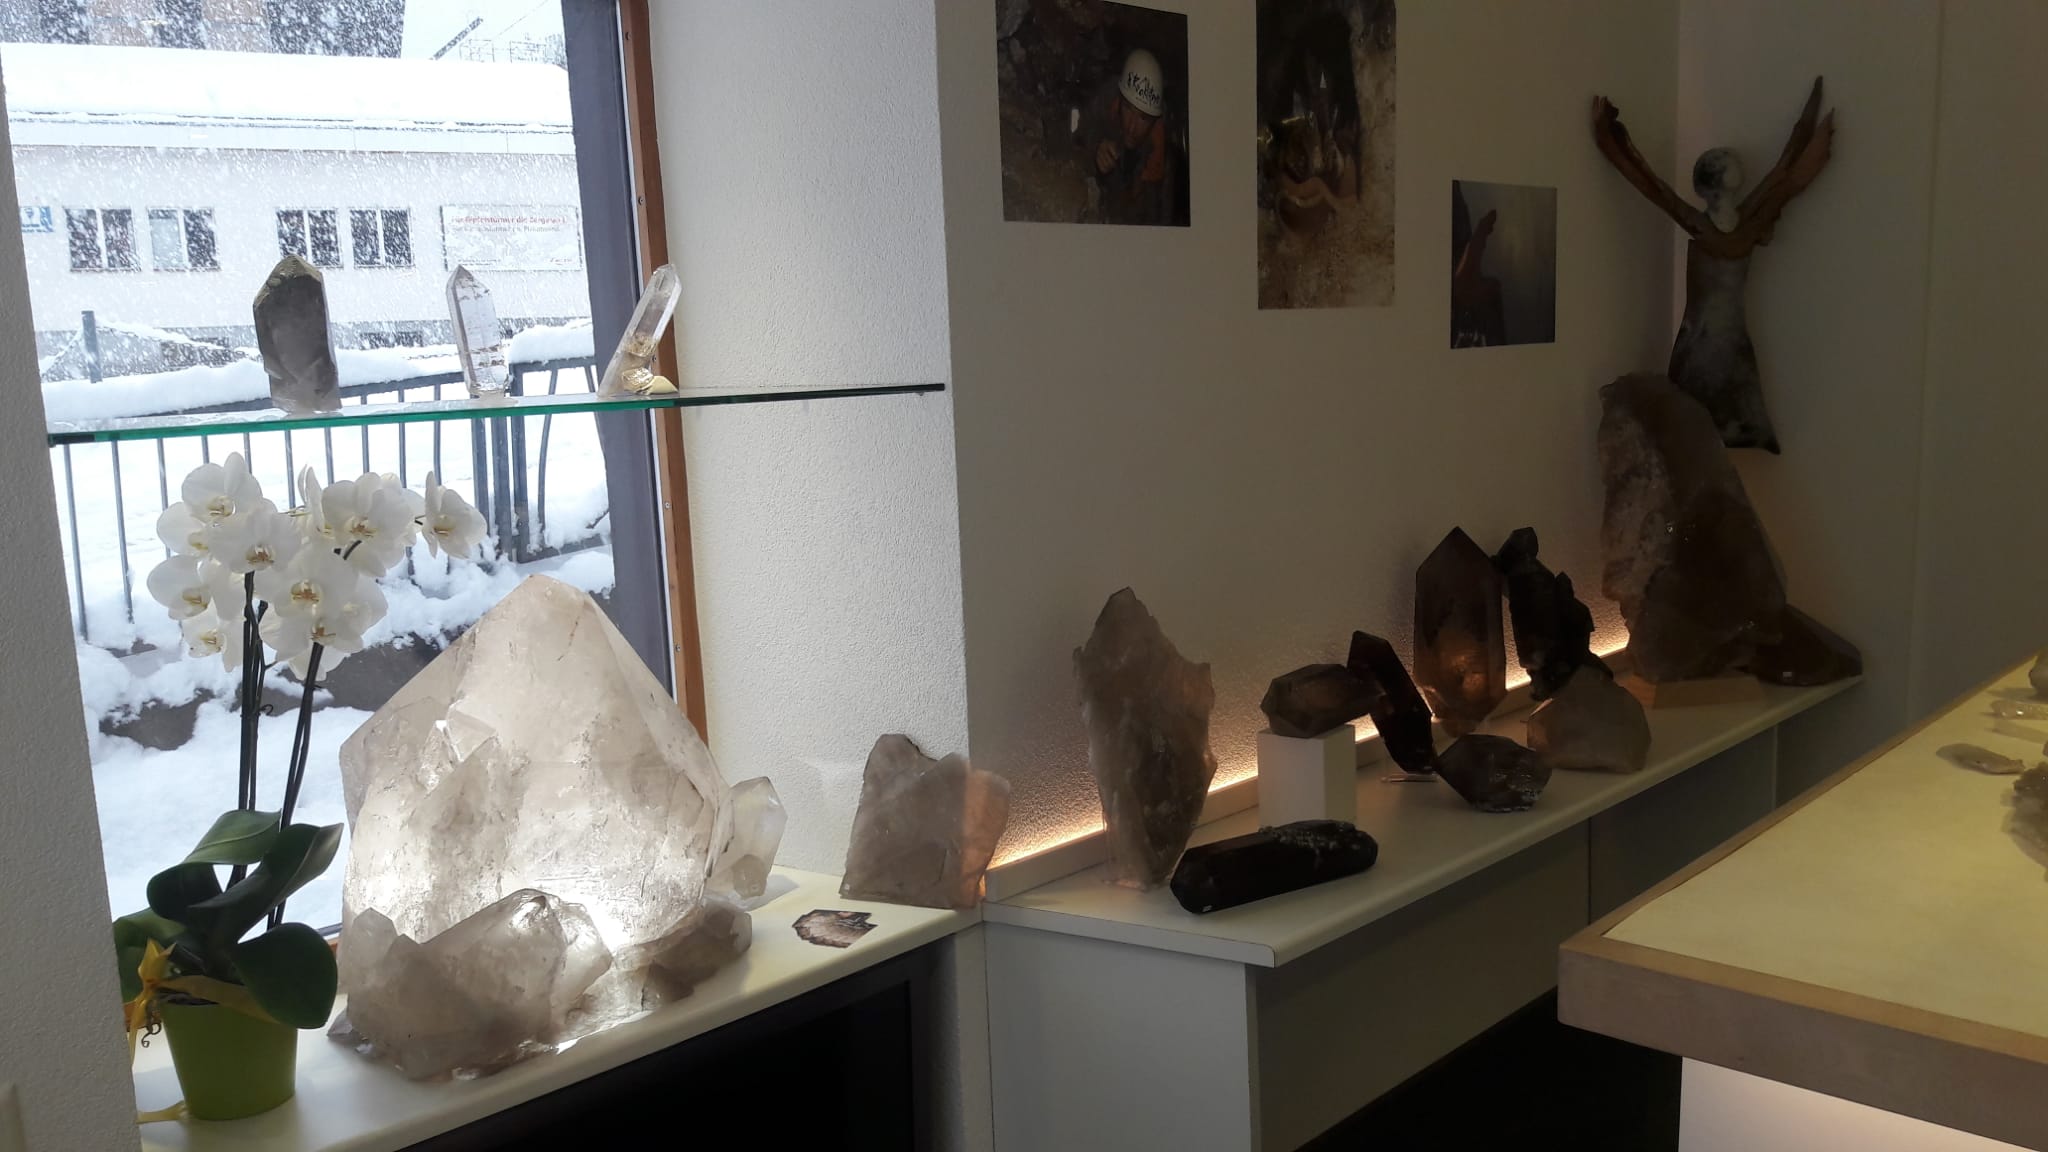 Seltene und einzigartige Mineralien und Kristallfunde zu betrachten in Mörel in der Schweizerbergkristalle Ausstellung